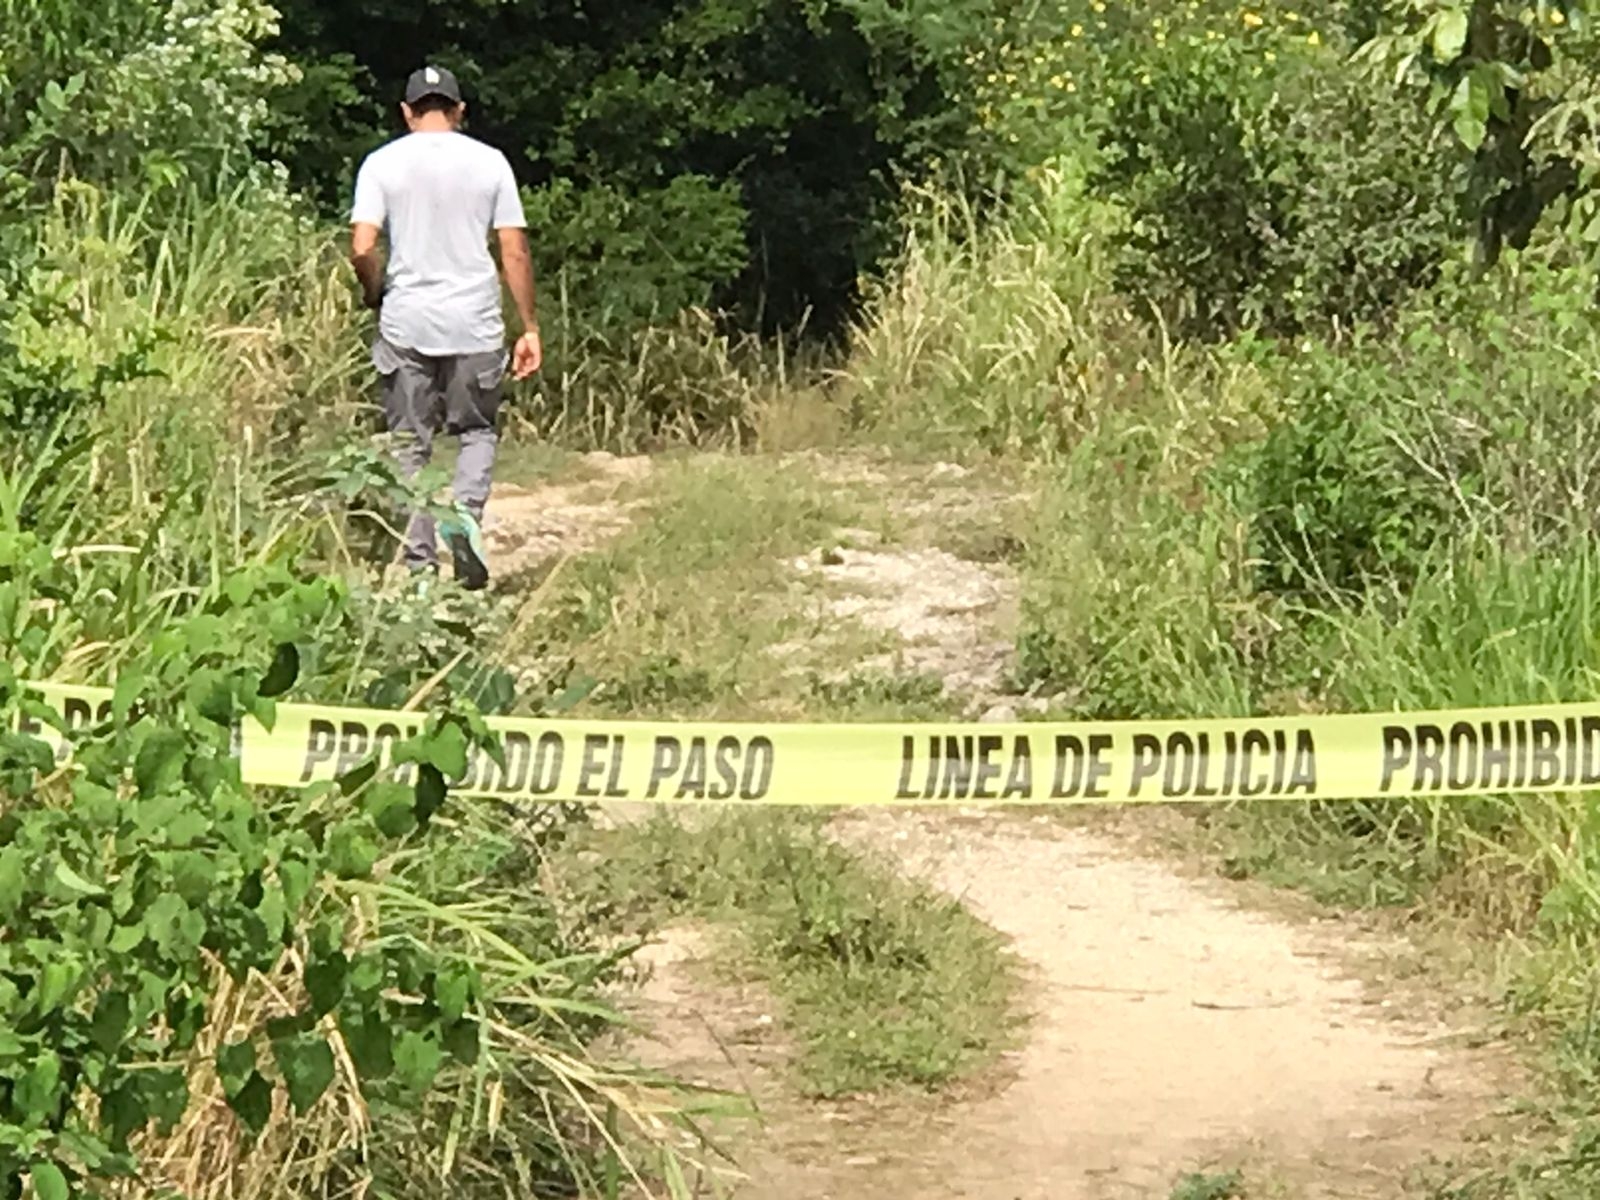 La violencia en la Zona Sur de Quintana Roo se vio con aumento en el área de la Ribera del Río Hondo, indicó Fernando Cabrera, de la Unión de Cañeros en dicha región del Estado